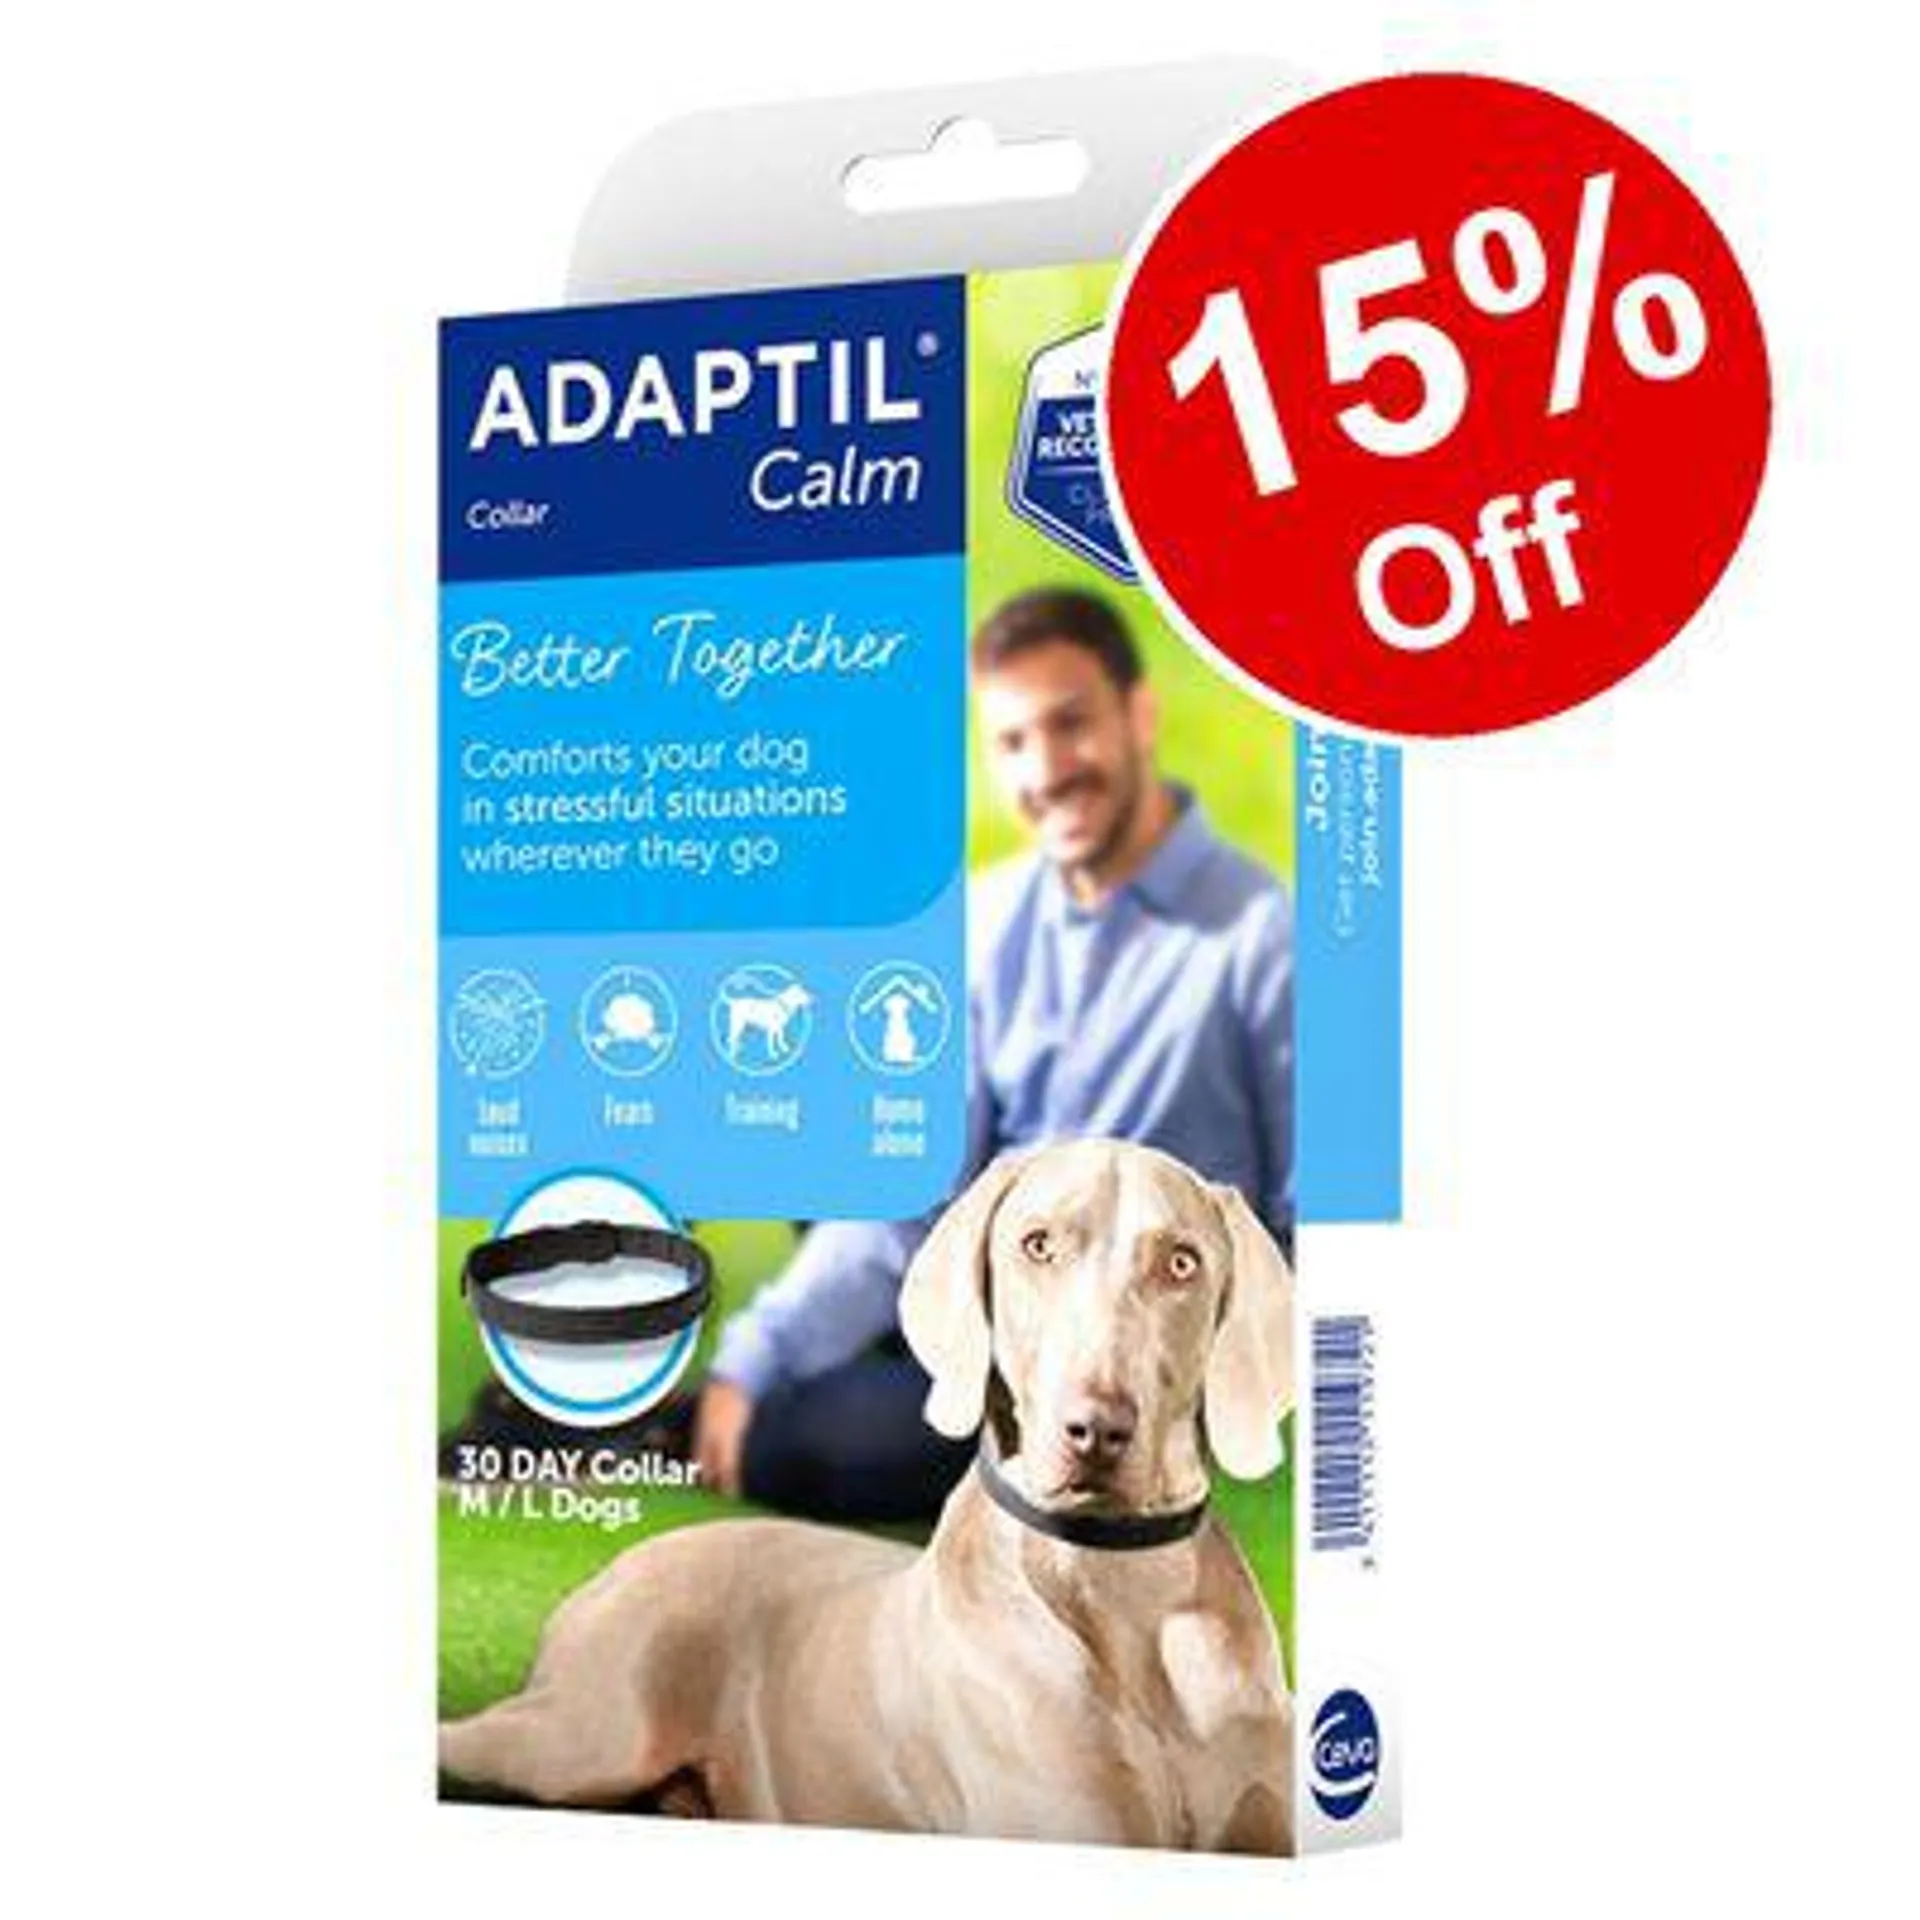 ADAPTIL® Calm Collar - 15% Off! *